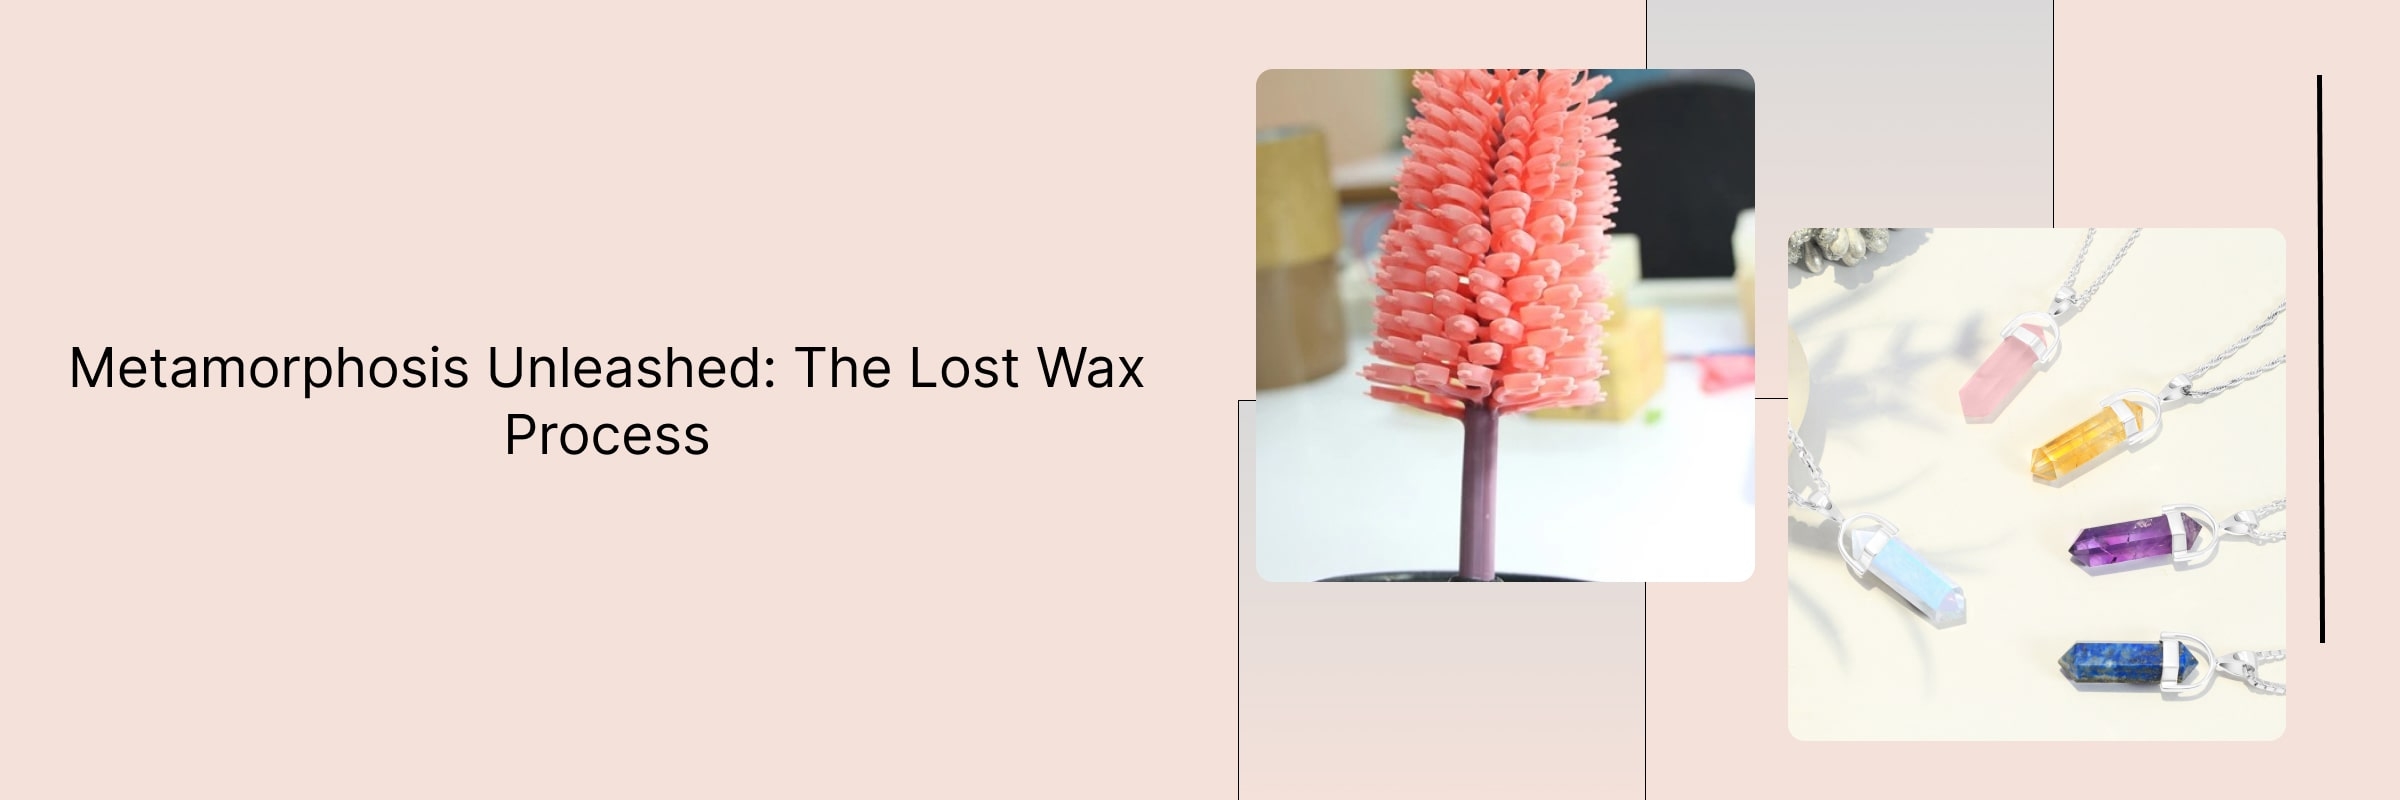 Lost Wax Process